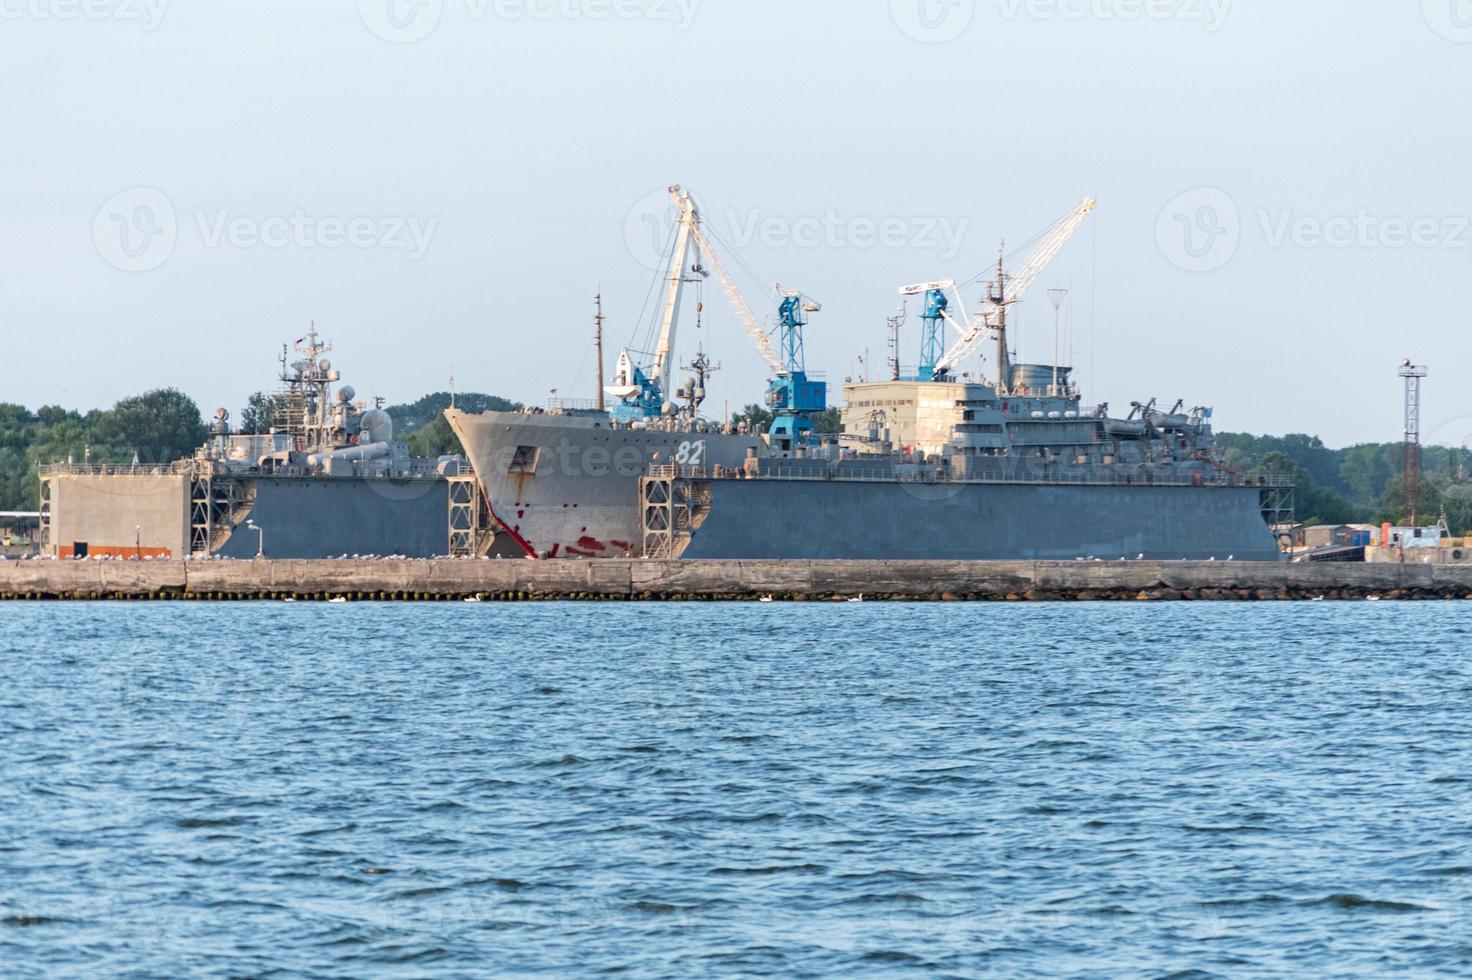 grandes barcos de la armada de hierro en el astillero para su reparación. gran grúa en el astillero. puerto de mar azul foto